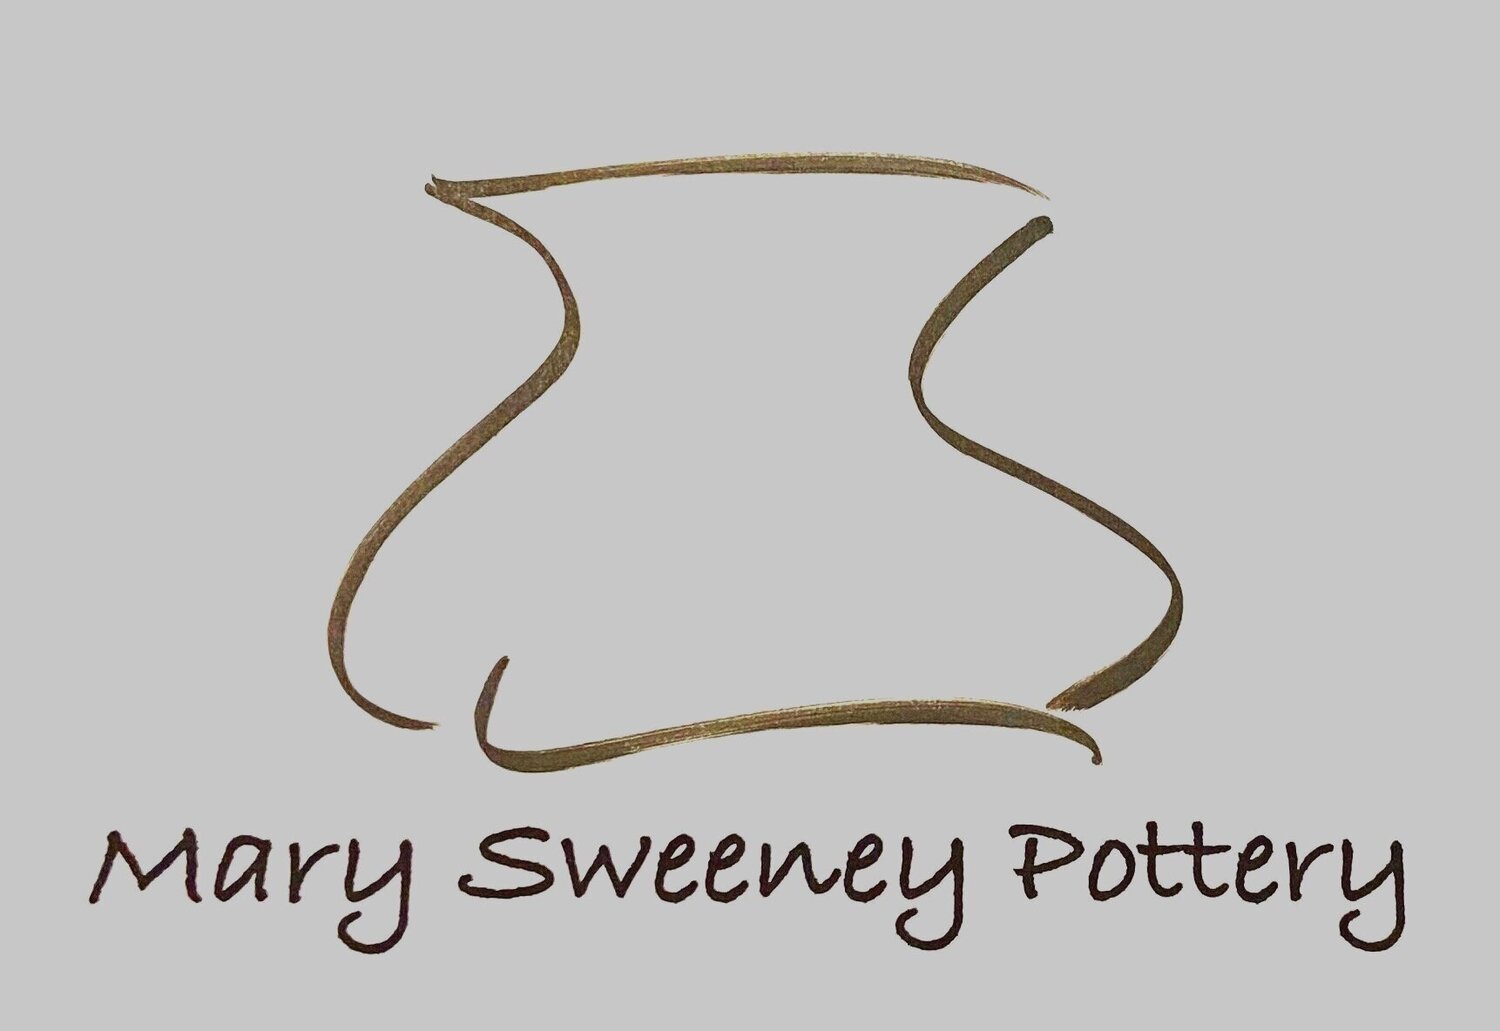 Mary Sweeney Pottery